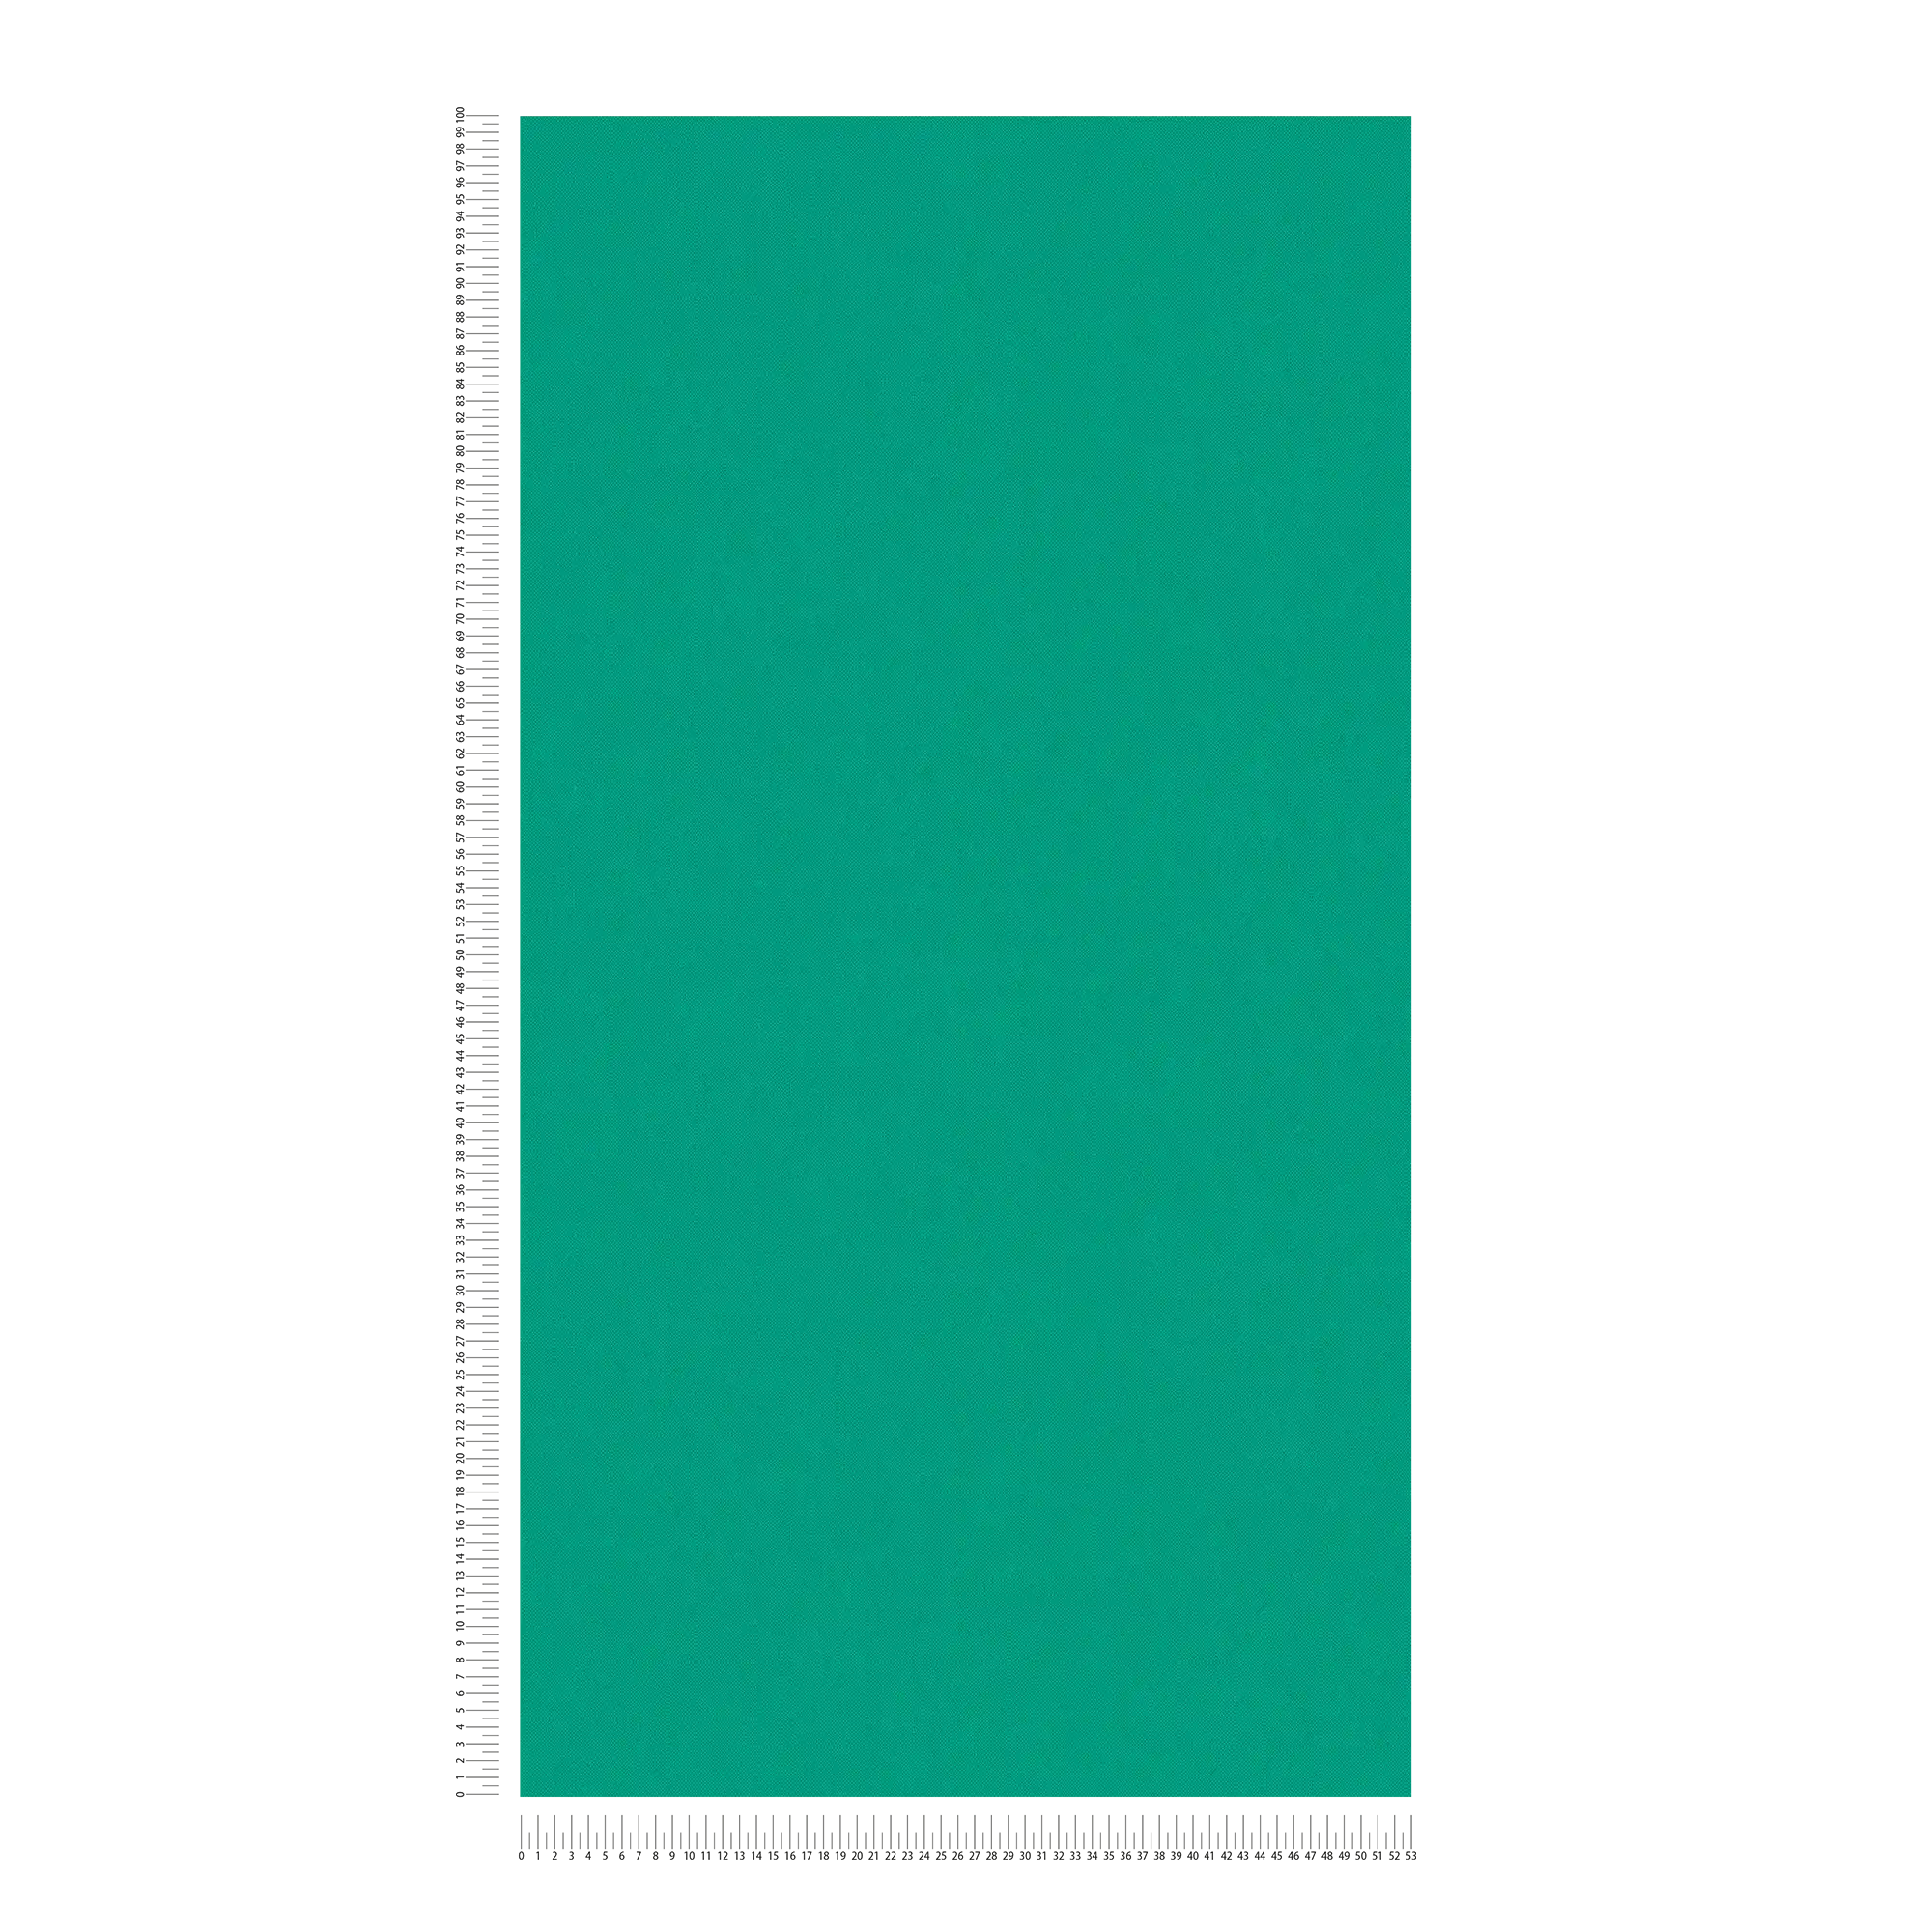             behang groen met textielstructuur mat uni signaal groen
        